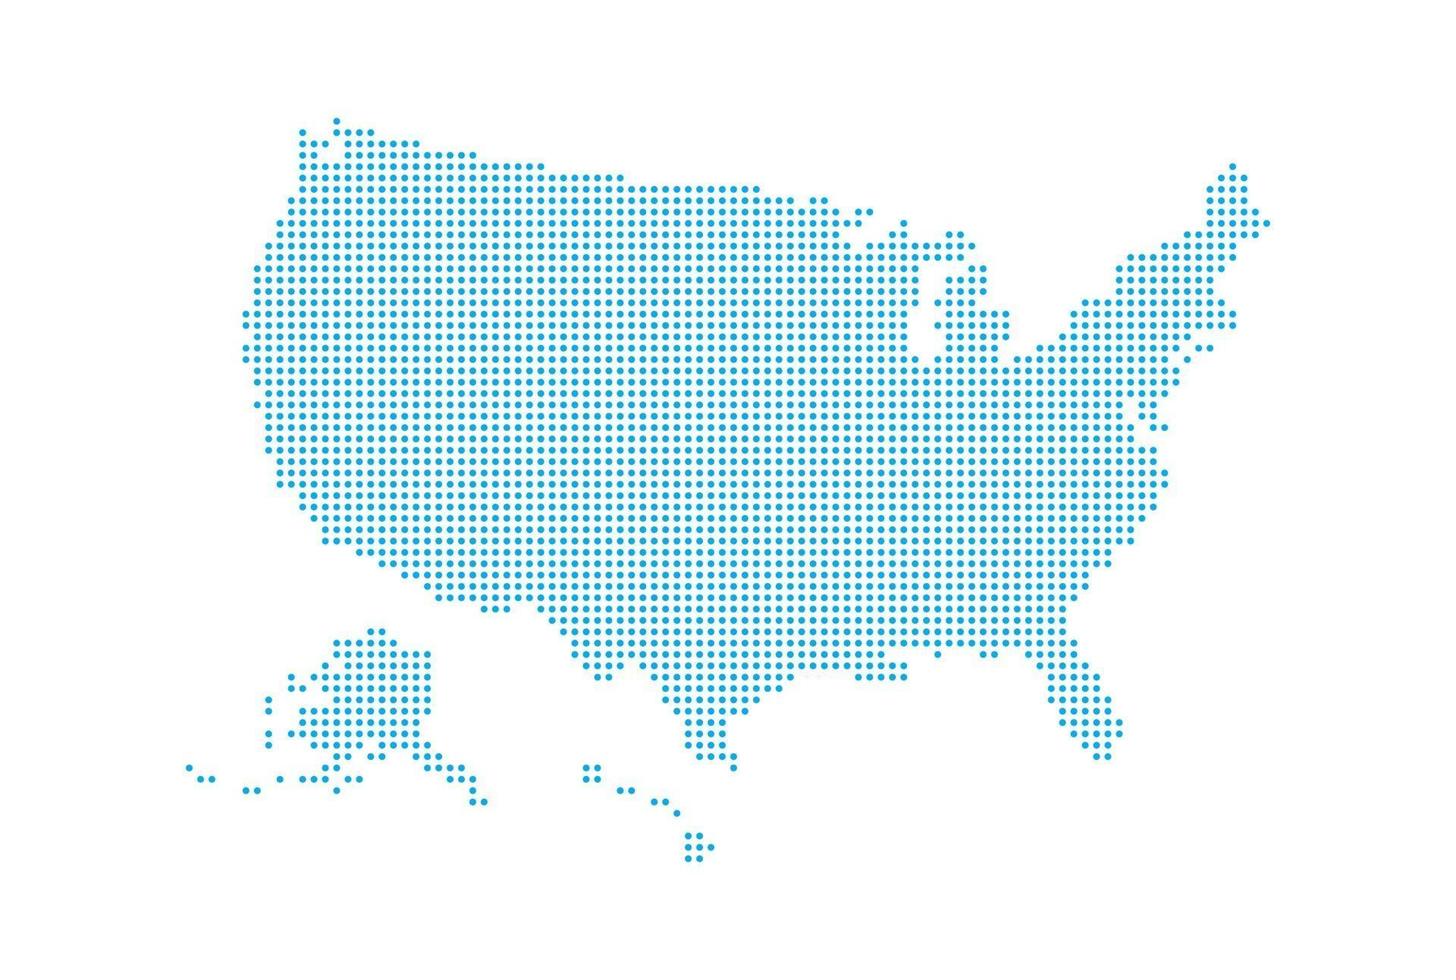 carte de style pointillé des états-unis et fond blanc vecteur